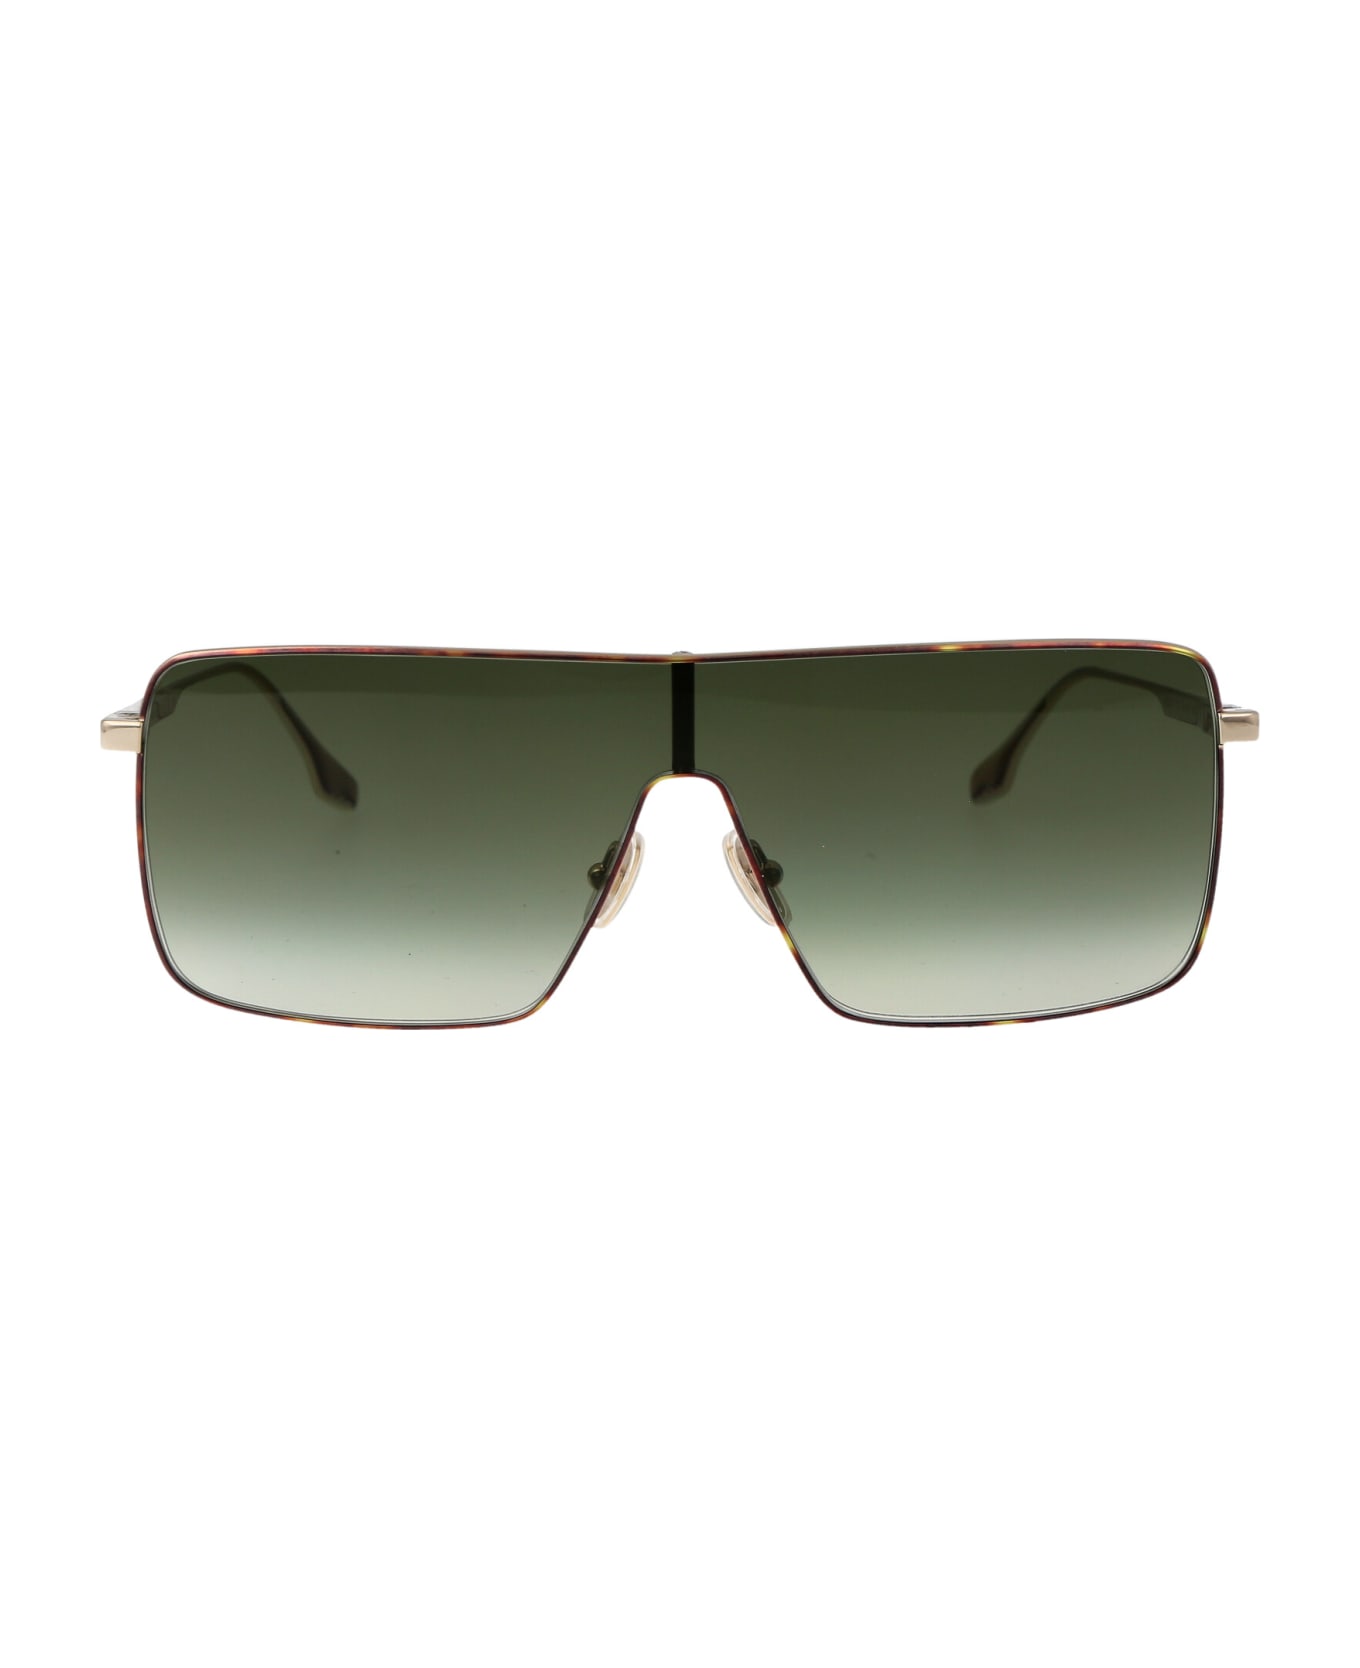 Victoria Beckham Vb238s Sunglasses - 700 GOLD/KHAKI